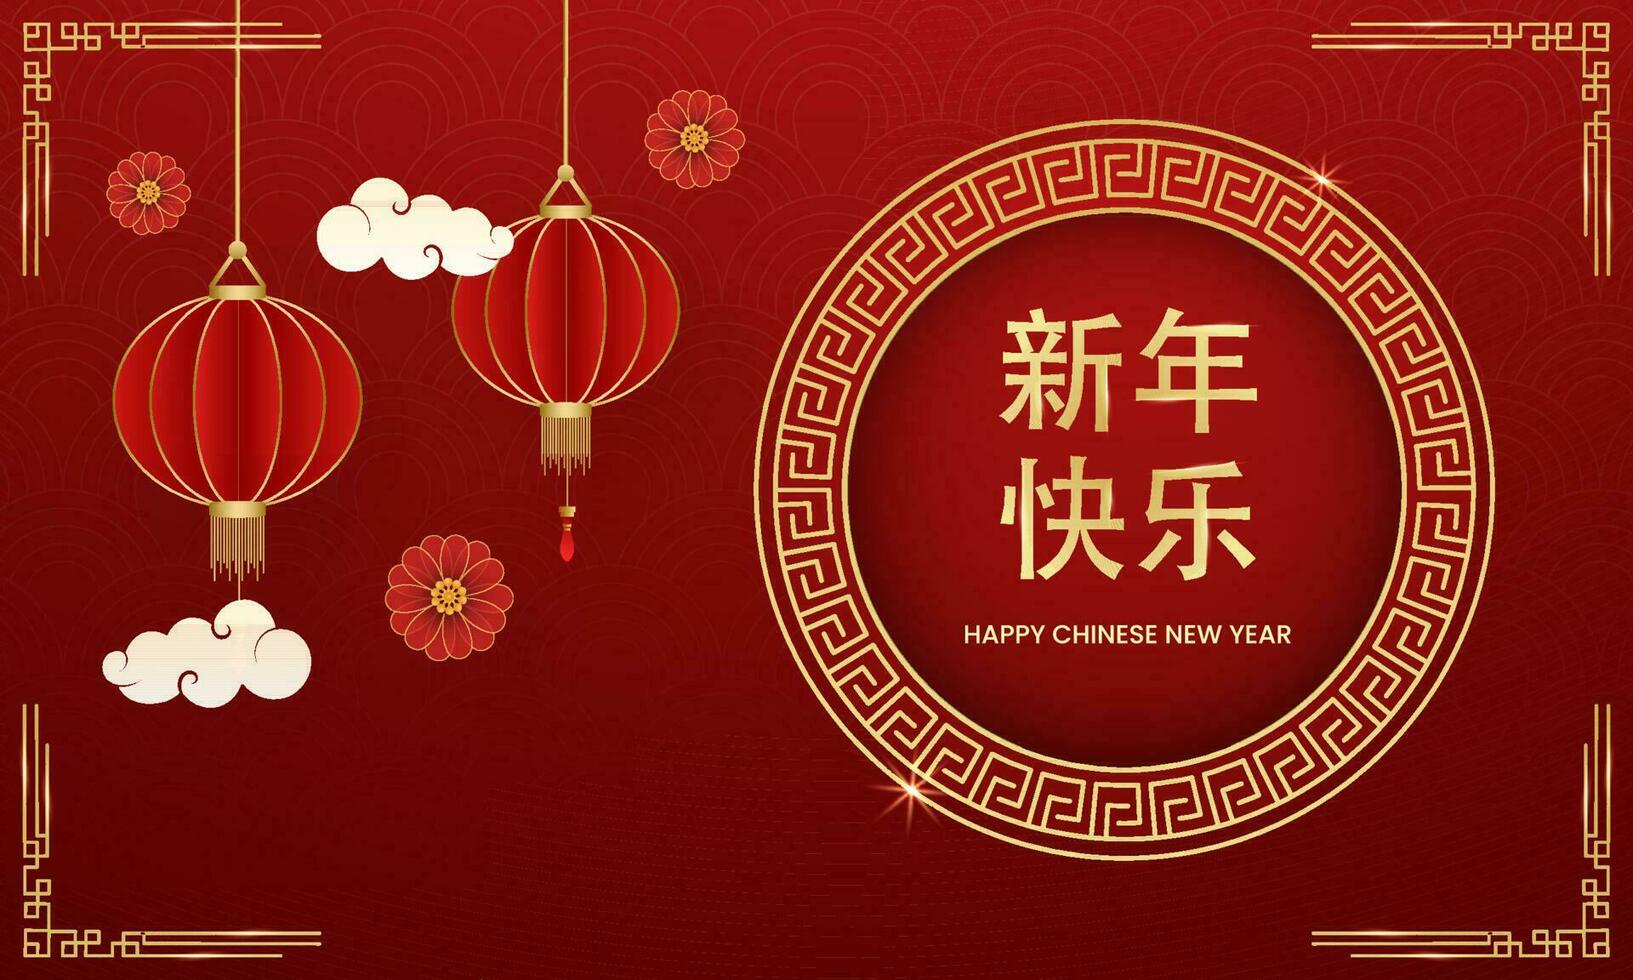 gyllene Lycklig kinesisk ny år mandarin text i cirkulär ram med papper skära lyktor hänga dekorerad på röd semi cirkel mönster bakgrund. vektor